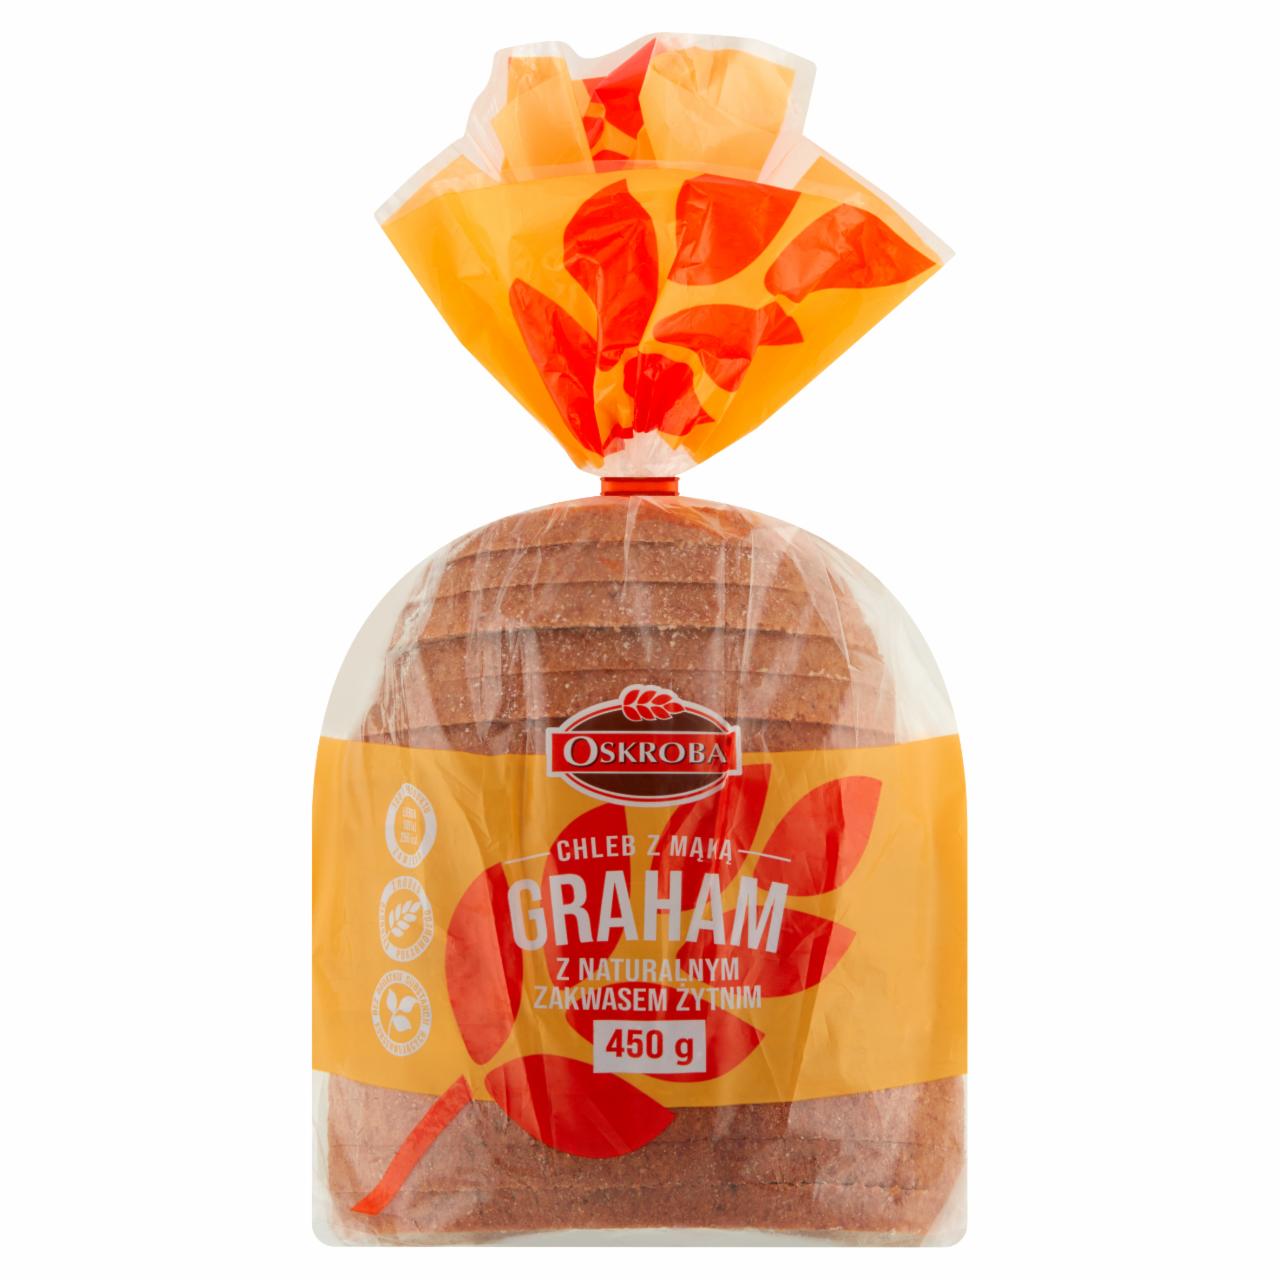 Zdjęcia - Oskroba Chleb z mąką graham 450 g